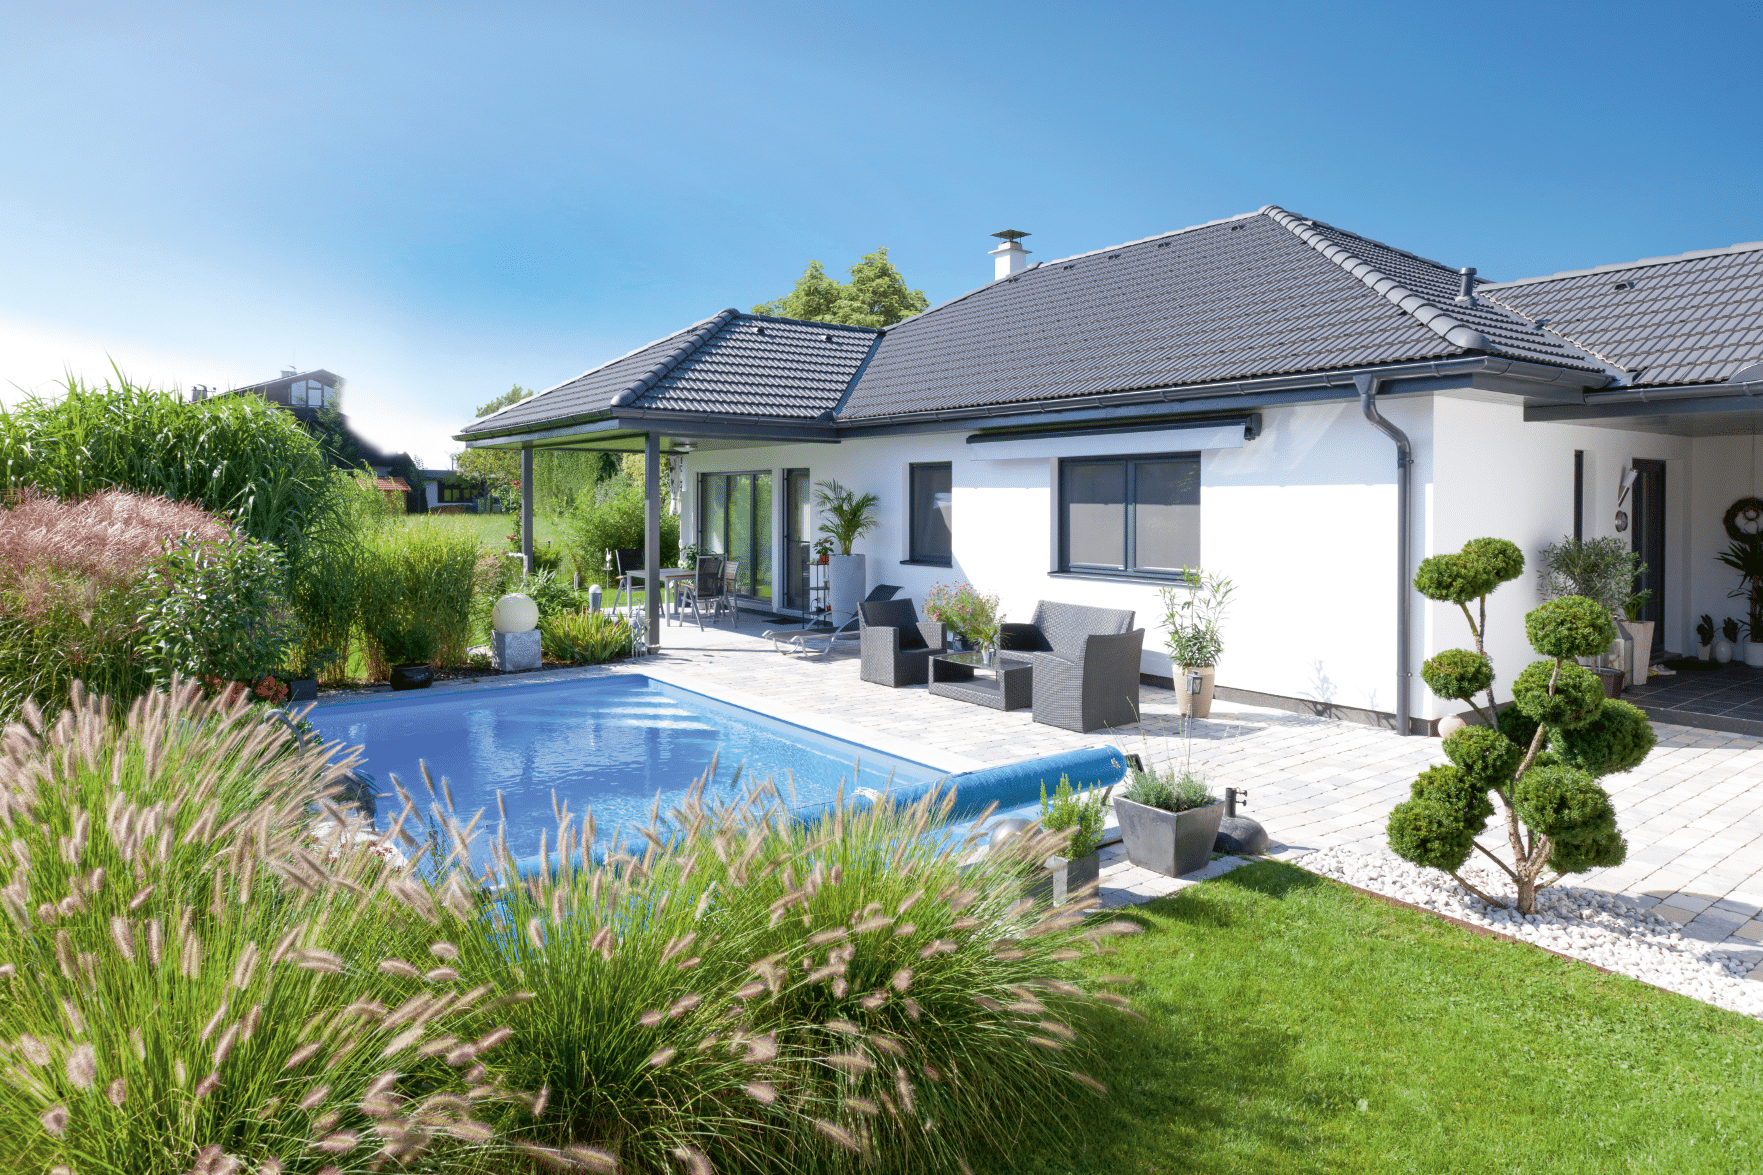 Bungalow-Fertigteilhaus mit Terrasse und Pool von Hartl Haus.